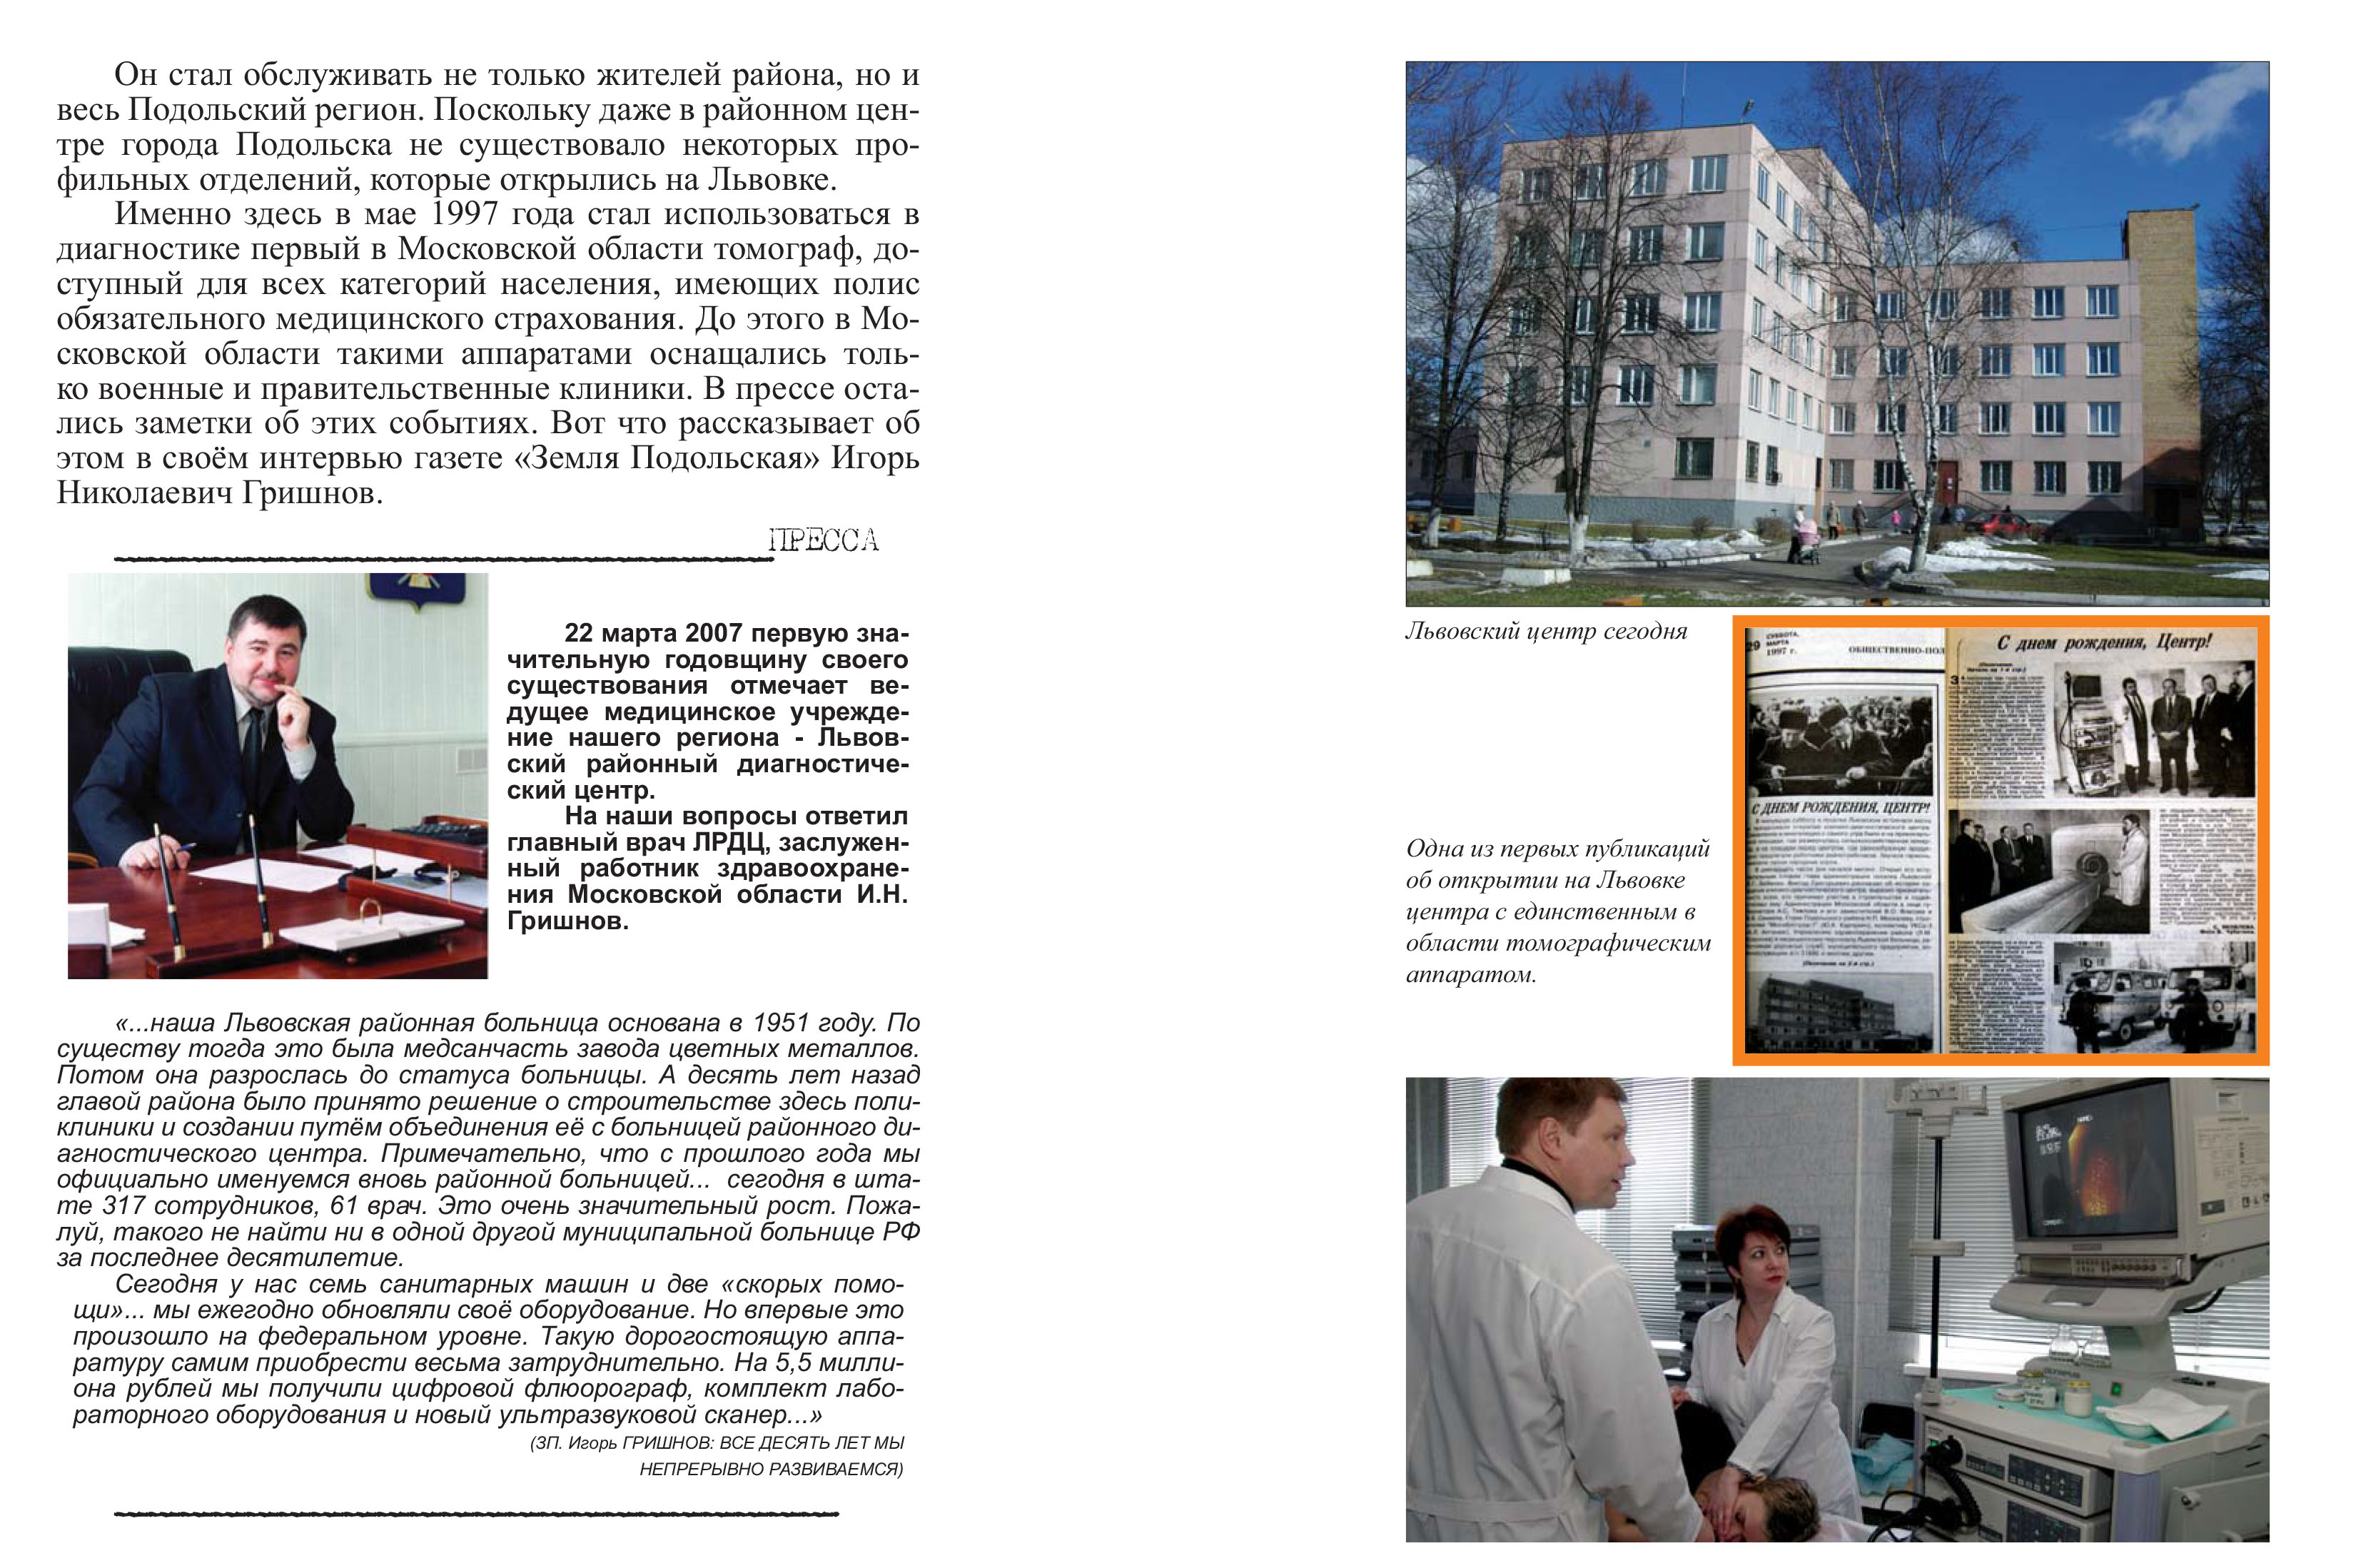 Развитие сферы здравоохранения в Подольском районе